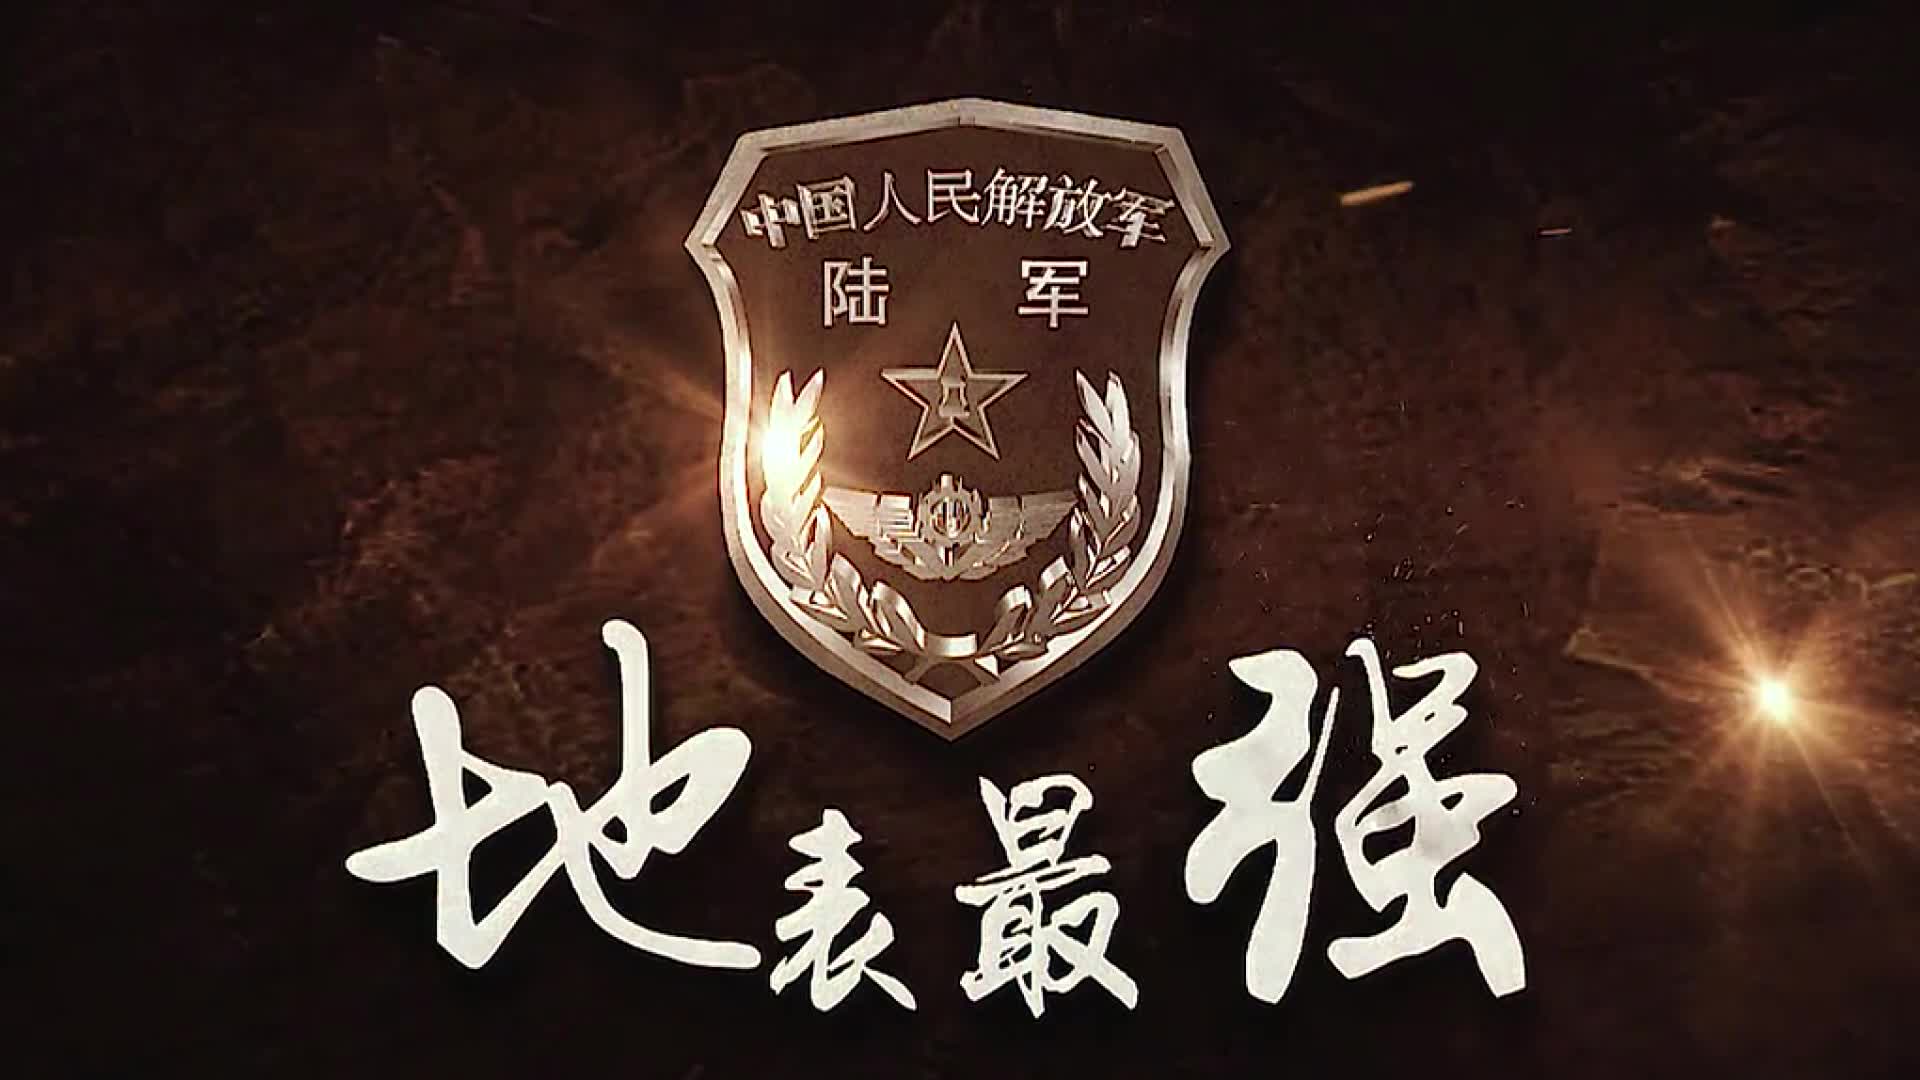 中国陆军壁纸图片